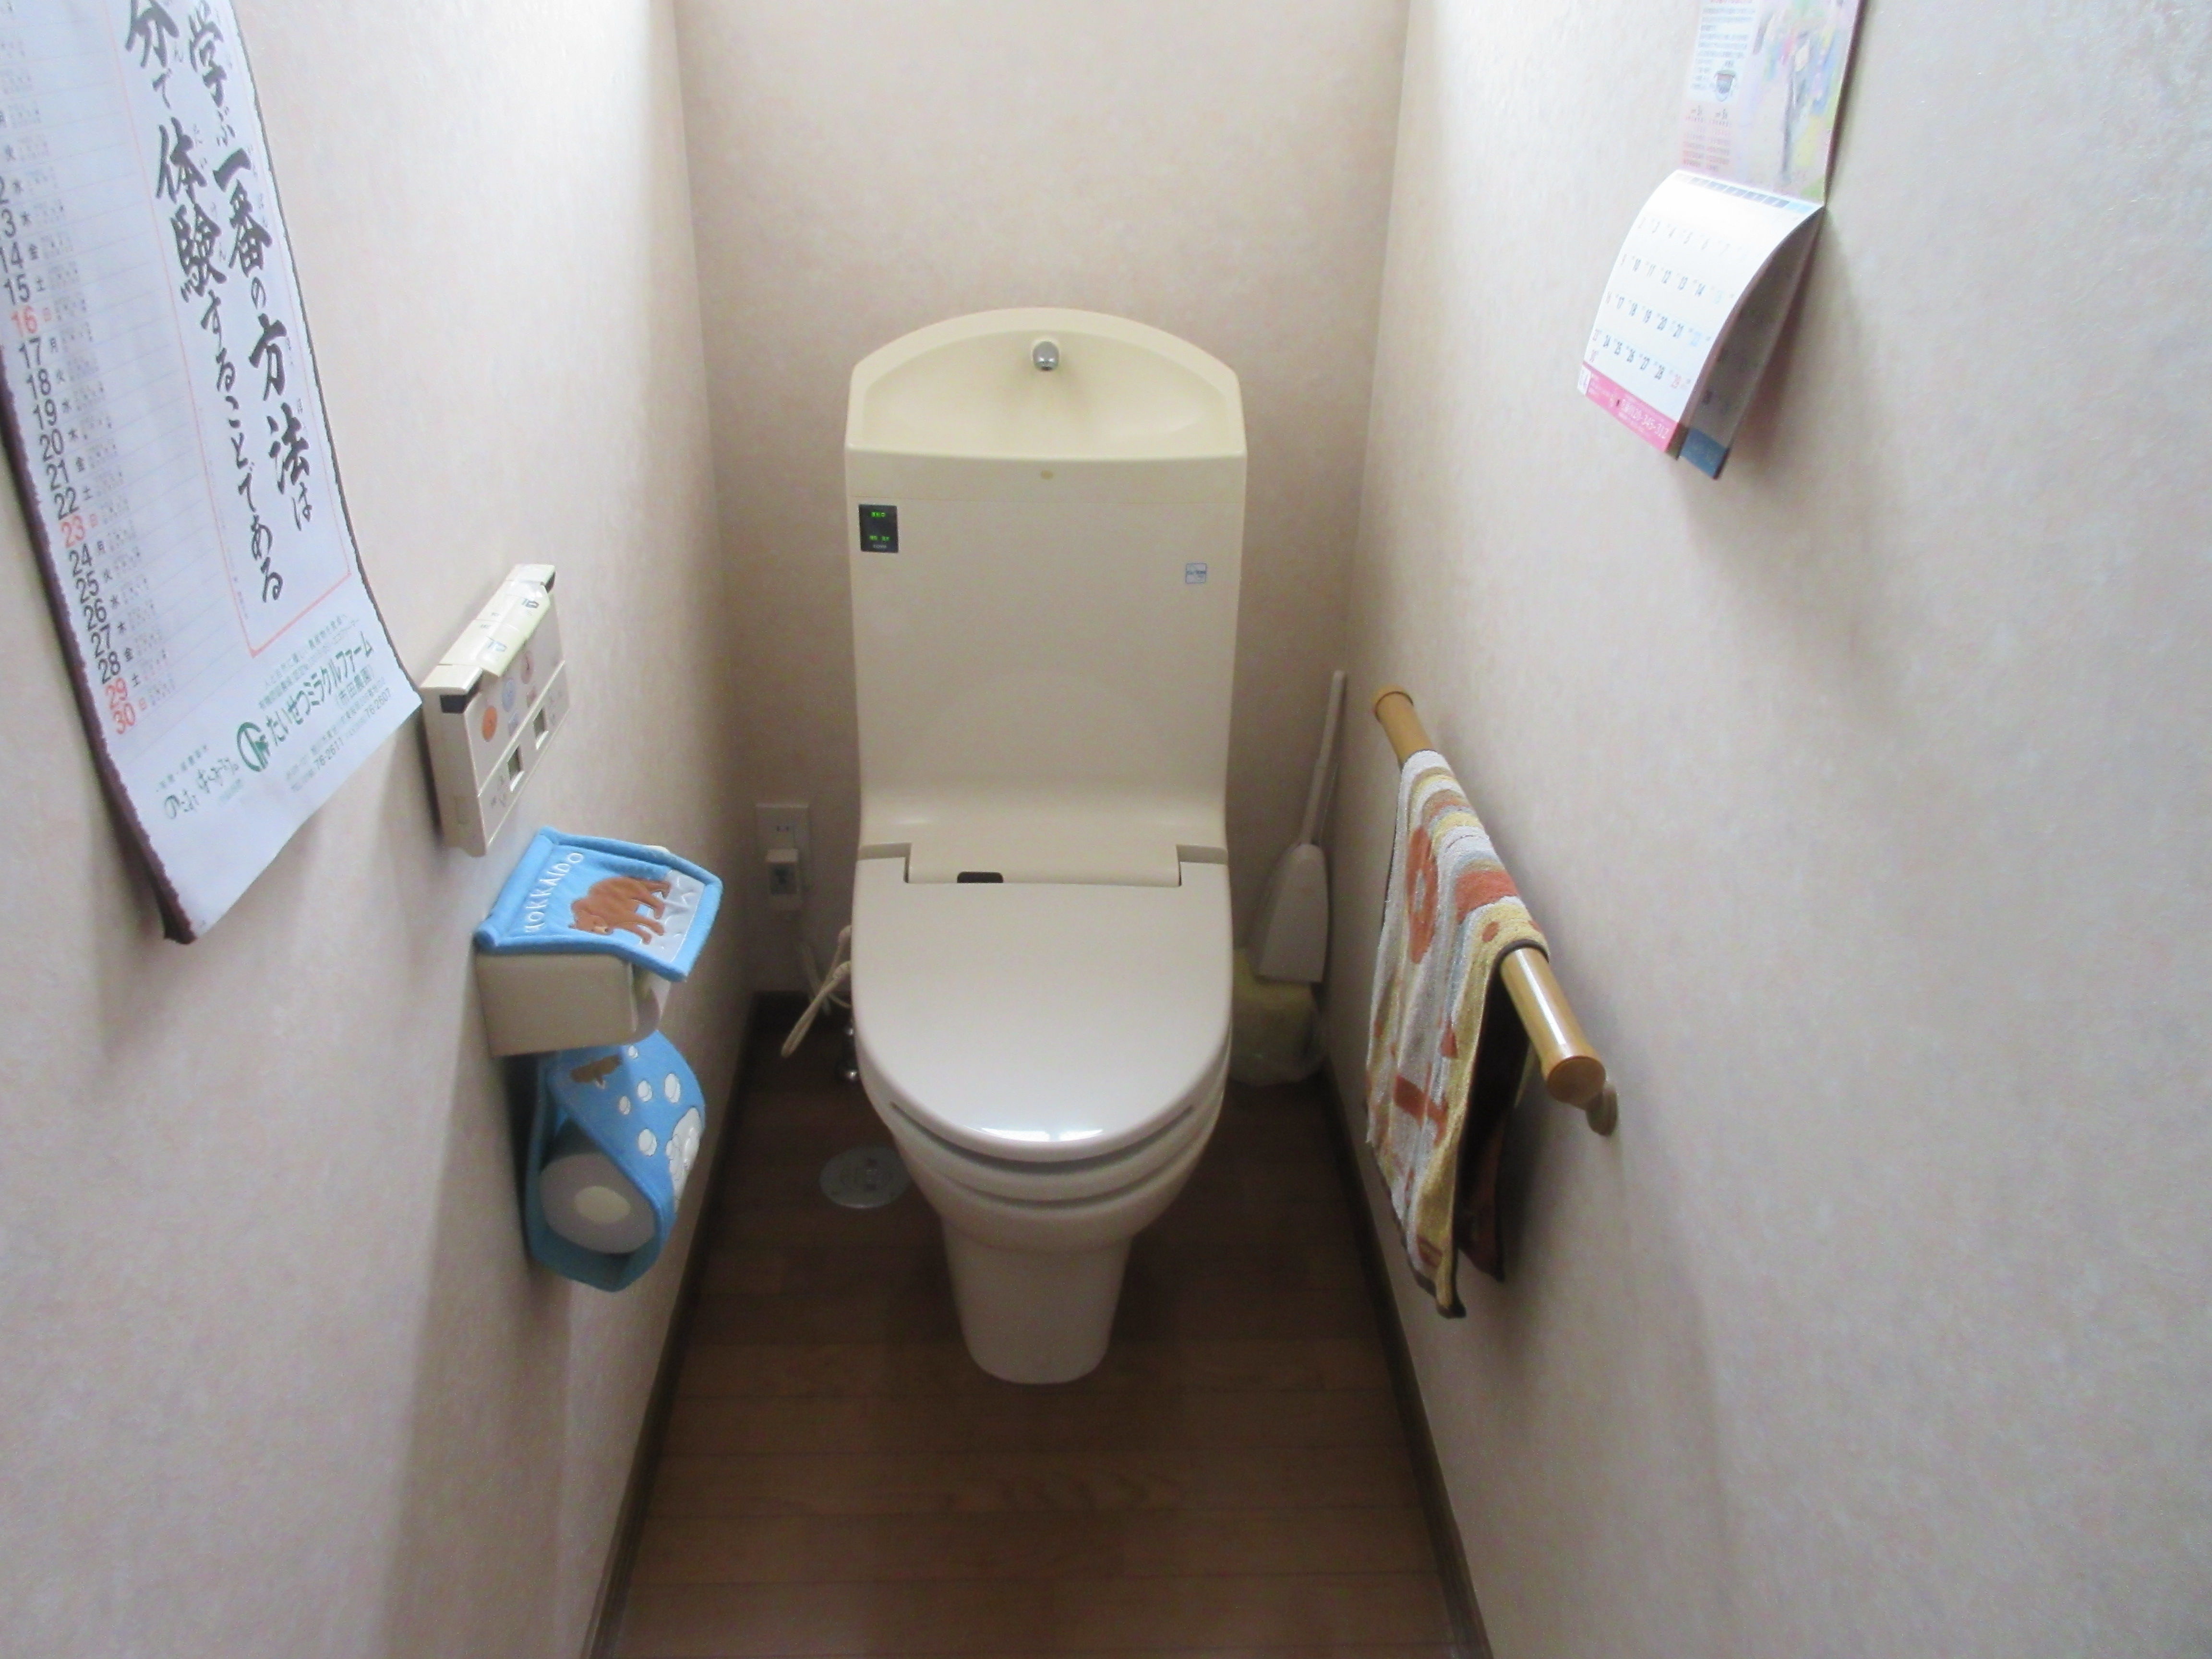 トイレ設備調査日記atosatu 祖父母宅1階トイレリフォーム前。